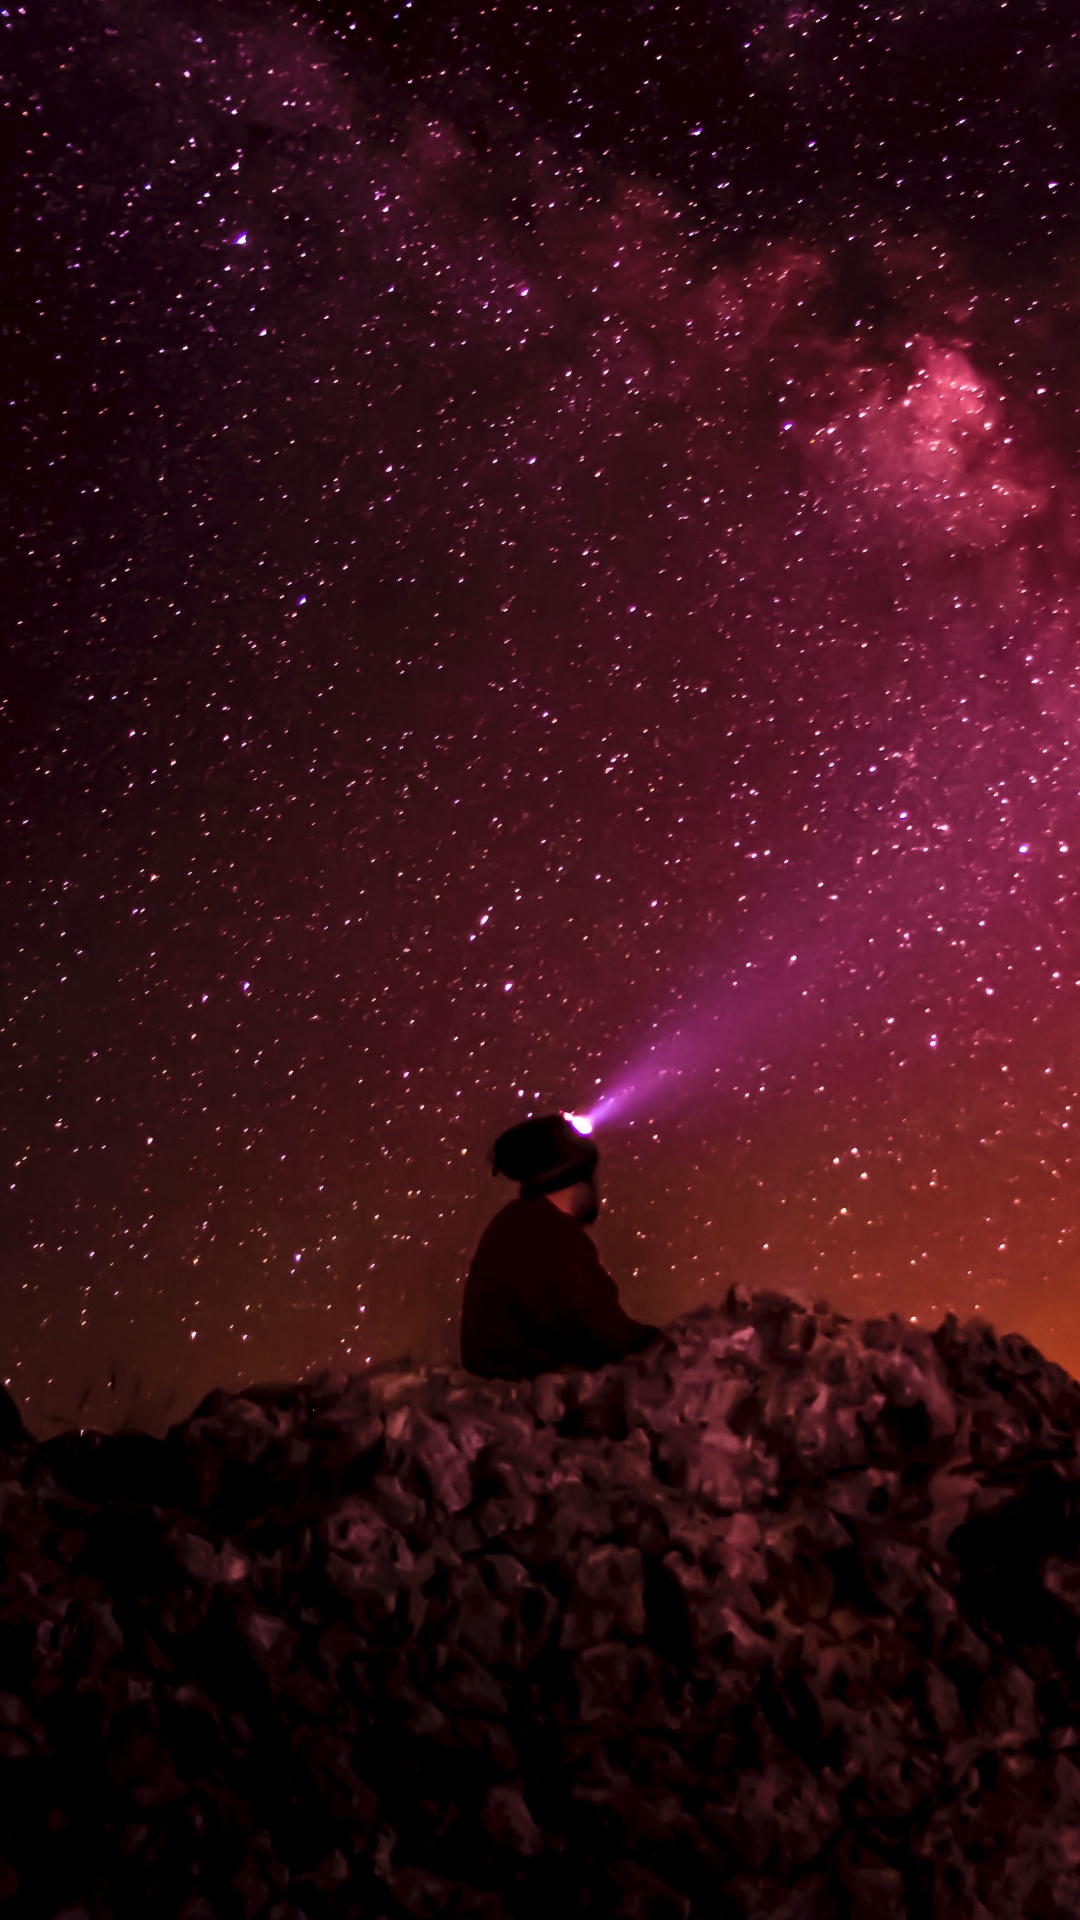 Hombre Sentado Sobre Una Roca Bajo la Noche Estrellada. Wallpaper in 1080x1920 Resolution